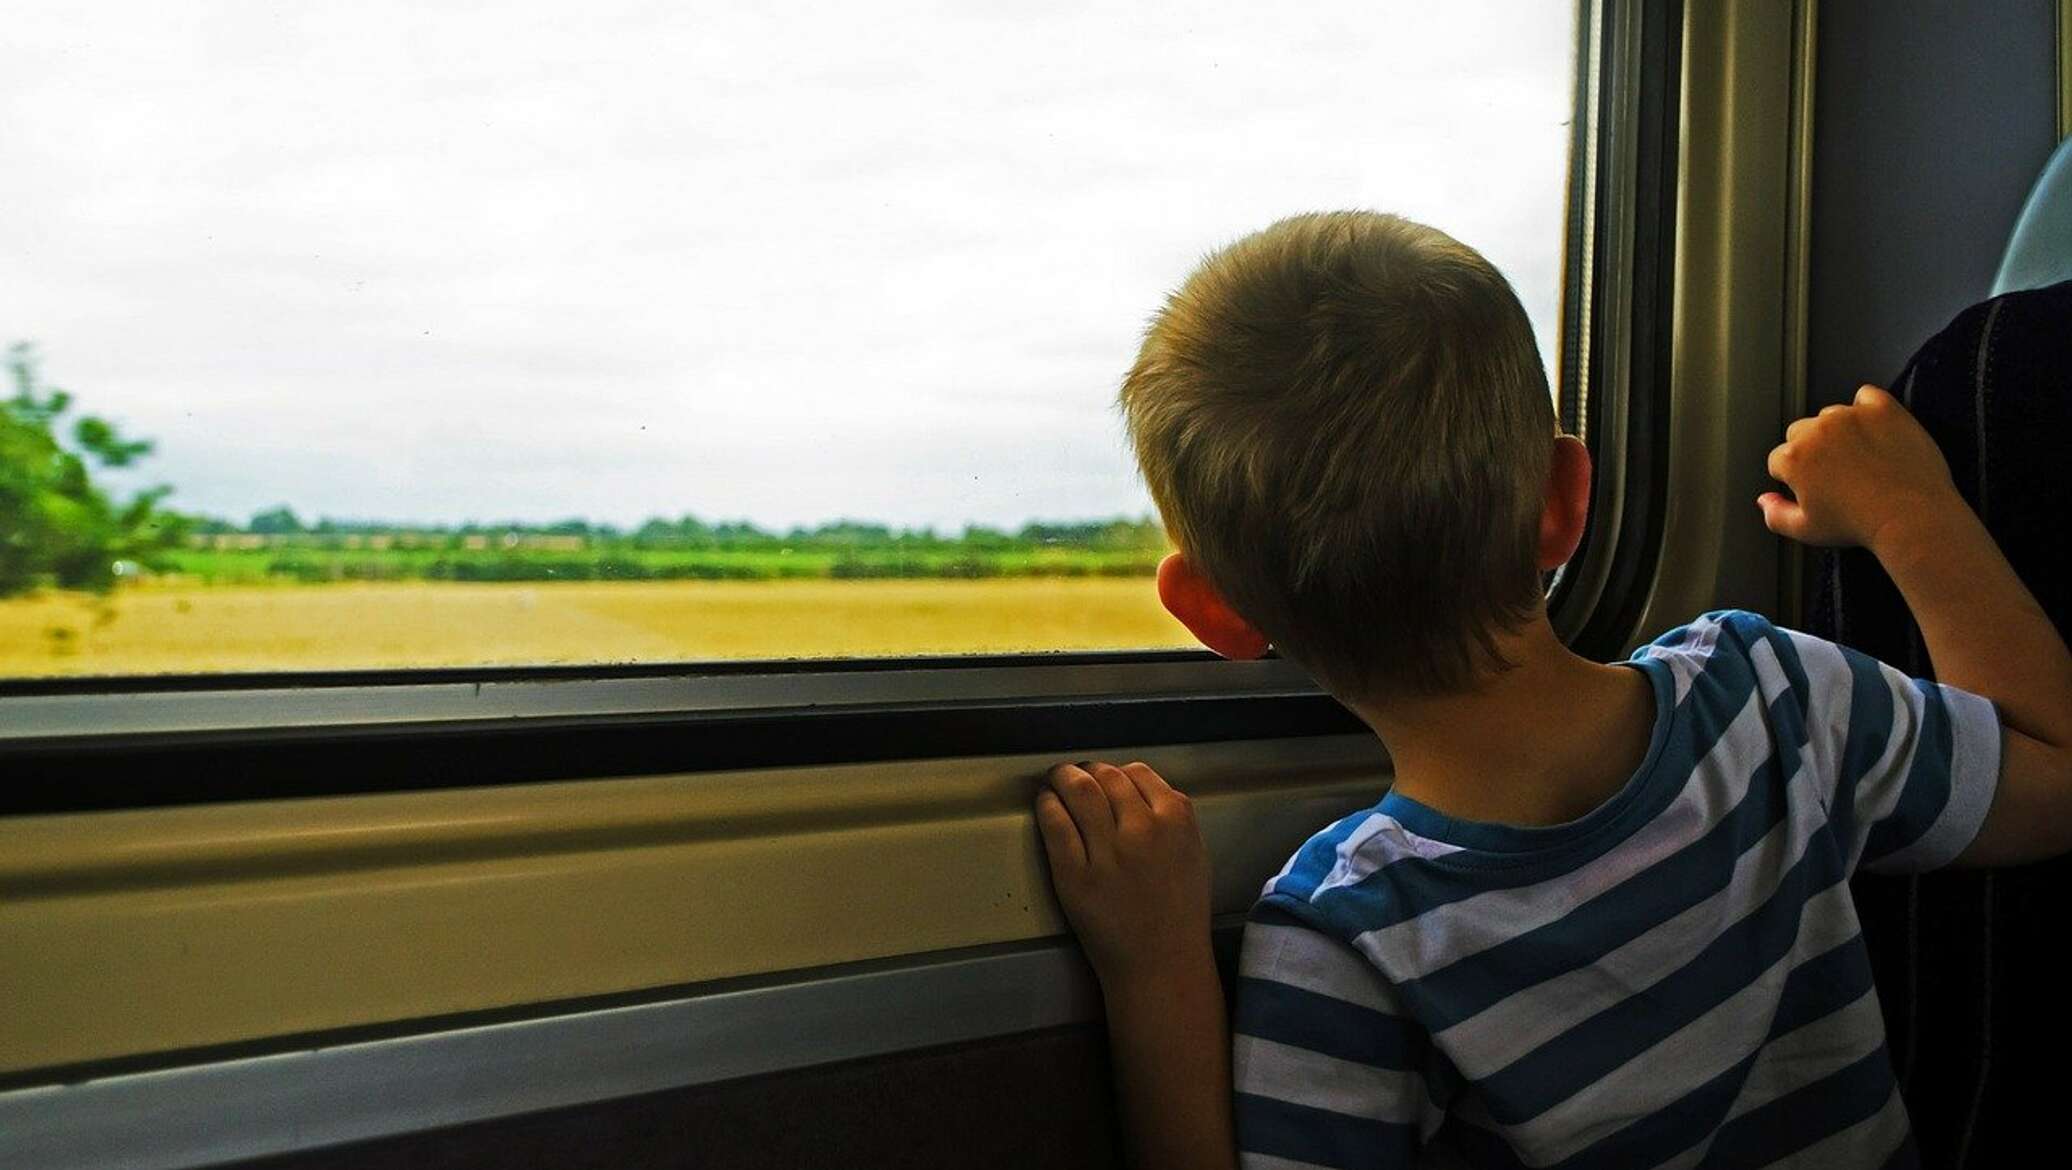 Можно несовершеннолетним ездить на поезде. Один мальчик. Поезда дальнего следования путешествие с ребенком. Электричка дети до 7 лет. Школьный автобус.